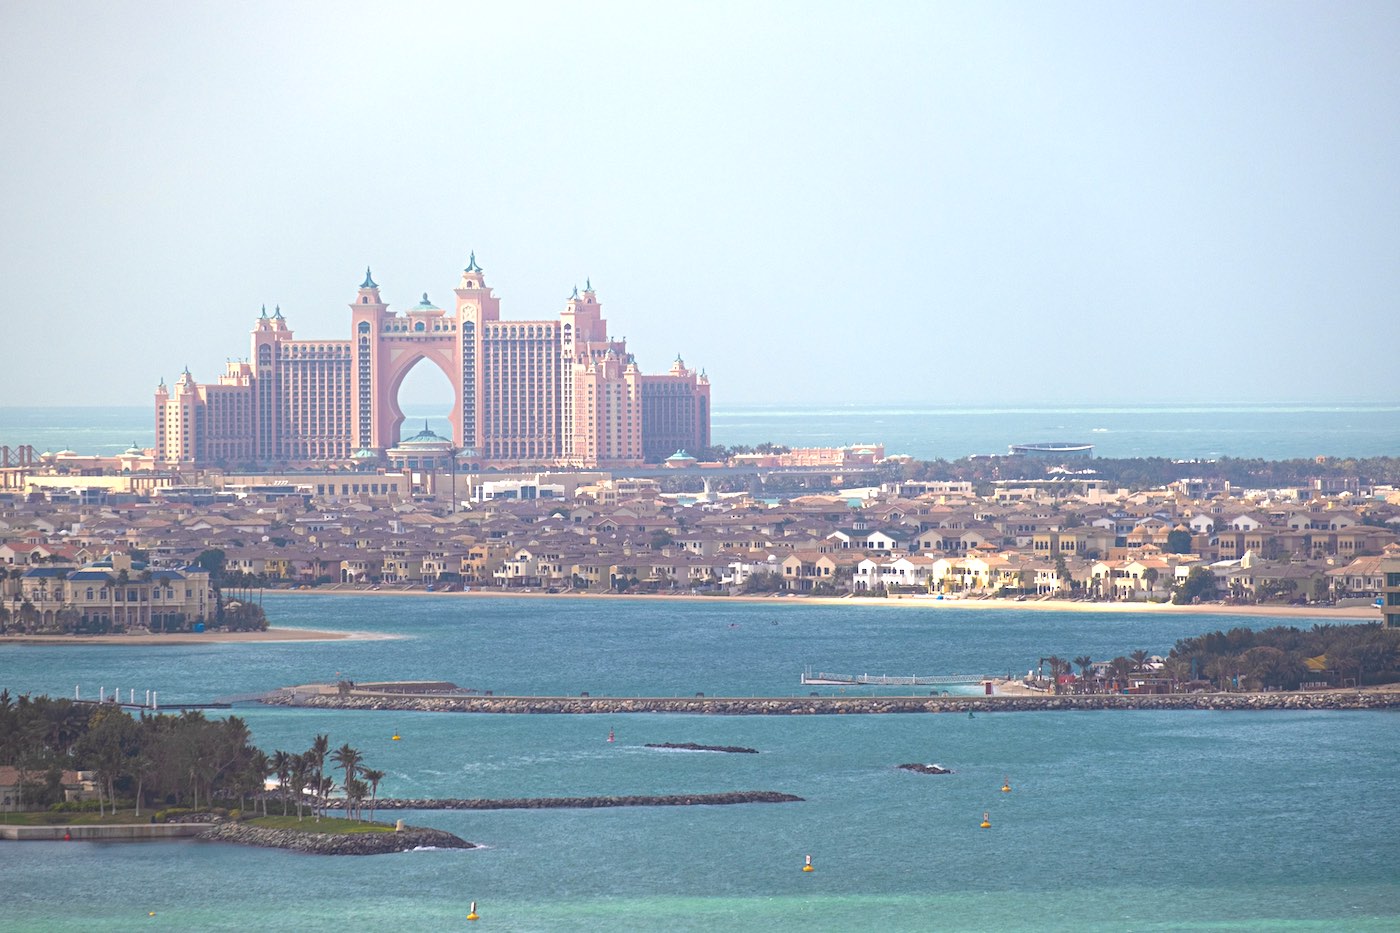 Hôtel Atlantis avec le parc aquatique Aquaventure à Dubai